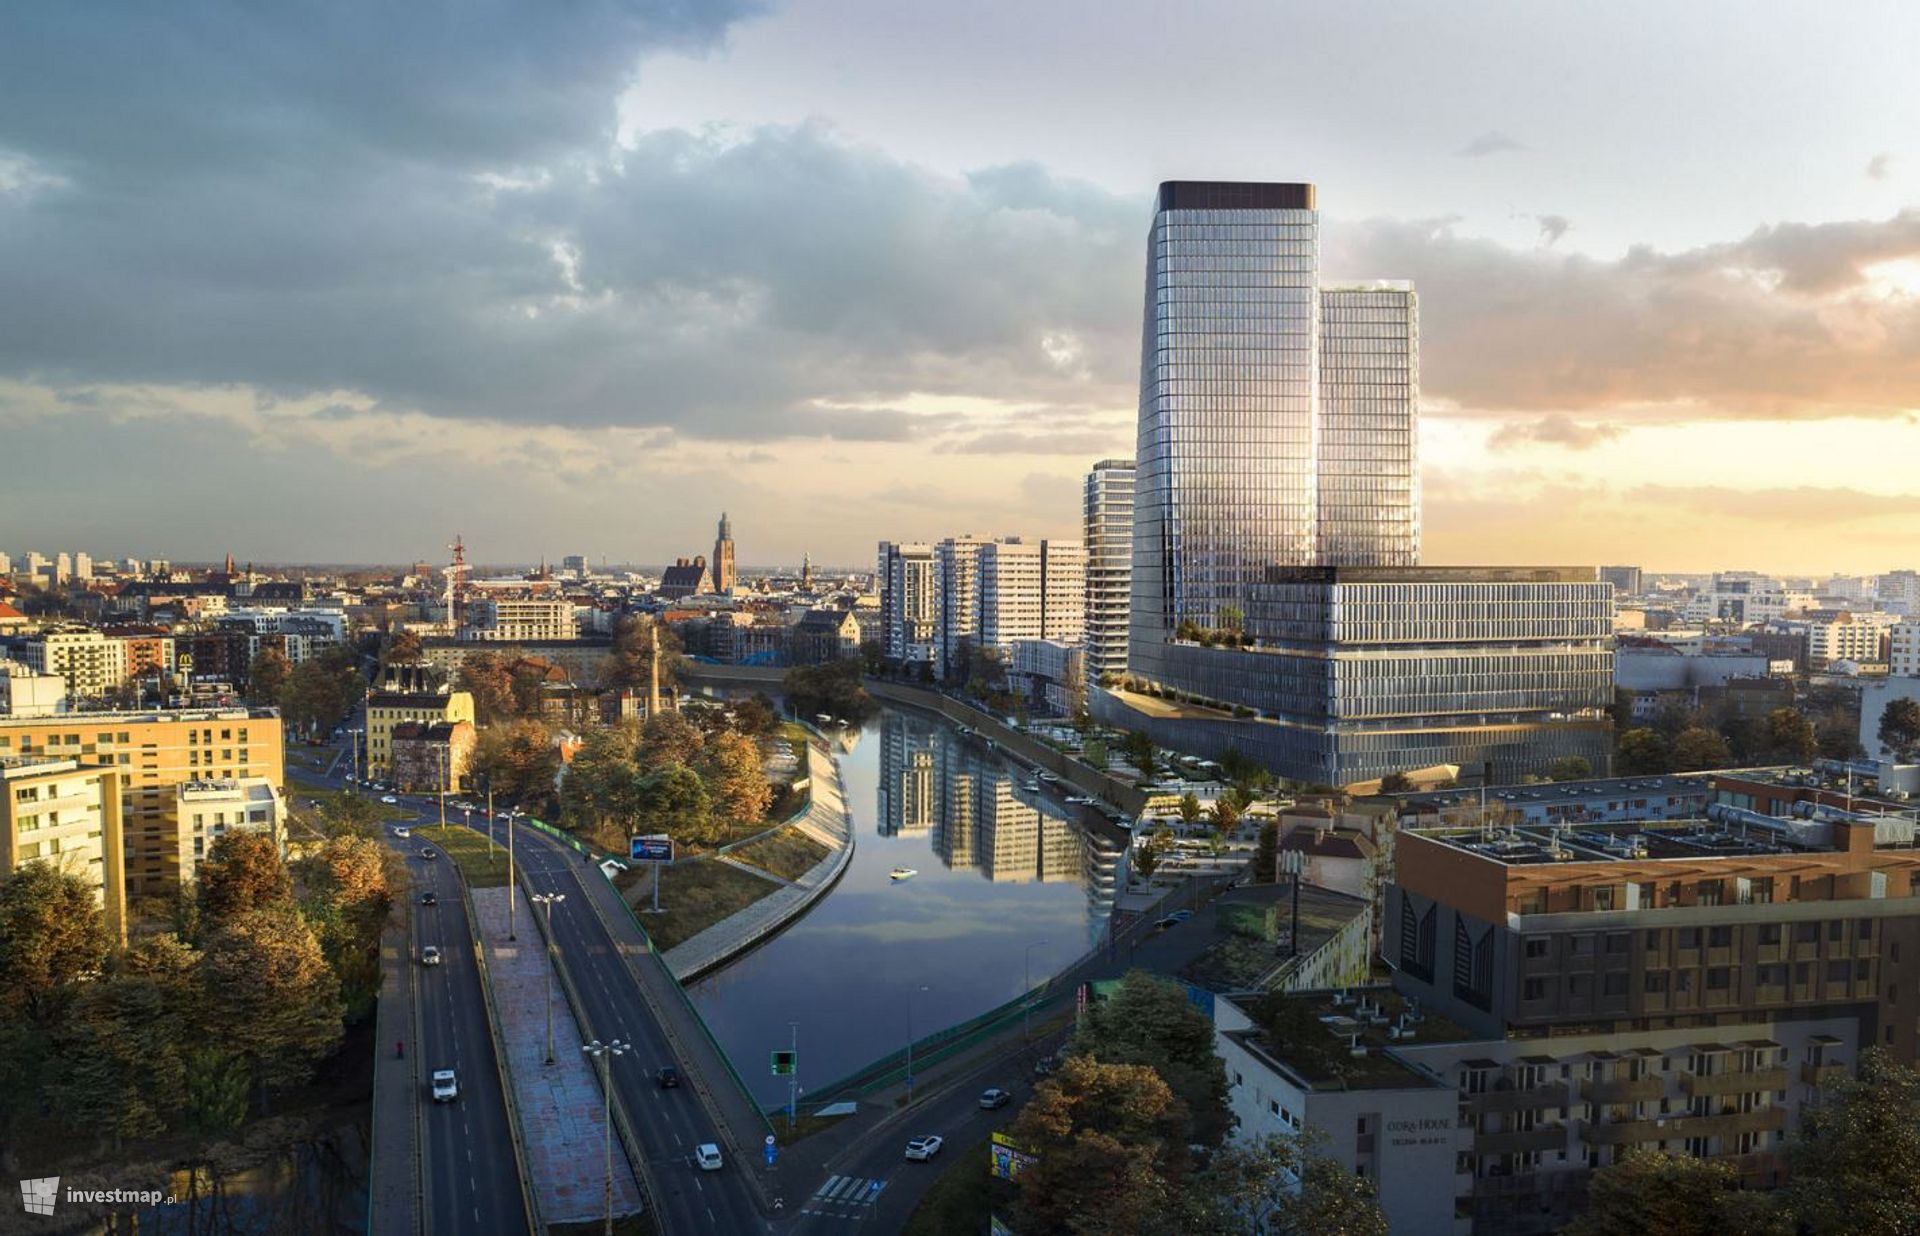 Wielofunkcyjny projekt Quorum wkrótce wzbogaci panoramę Wrocławia 